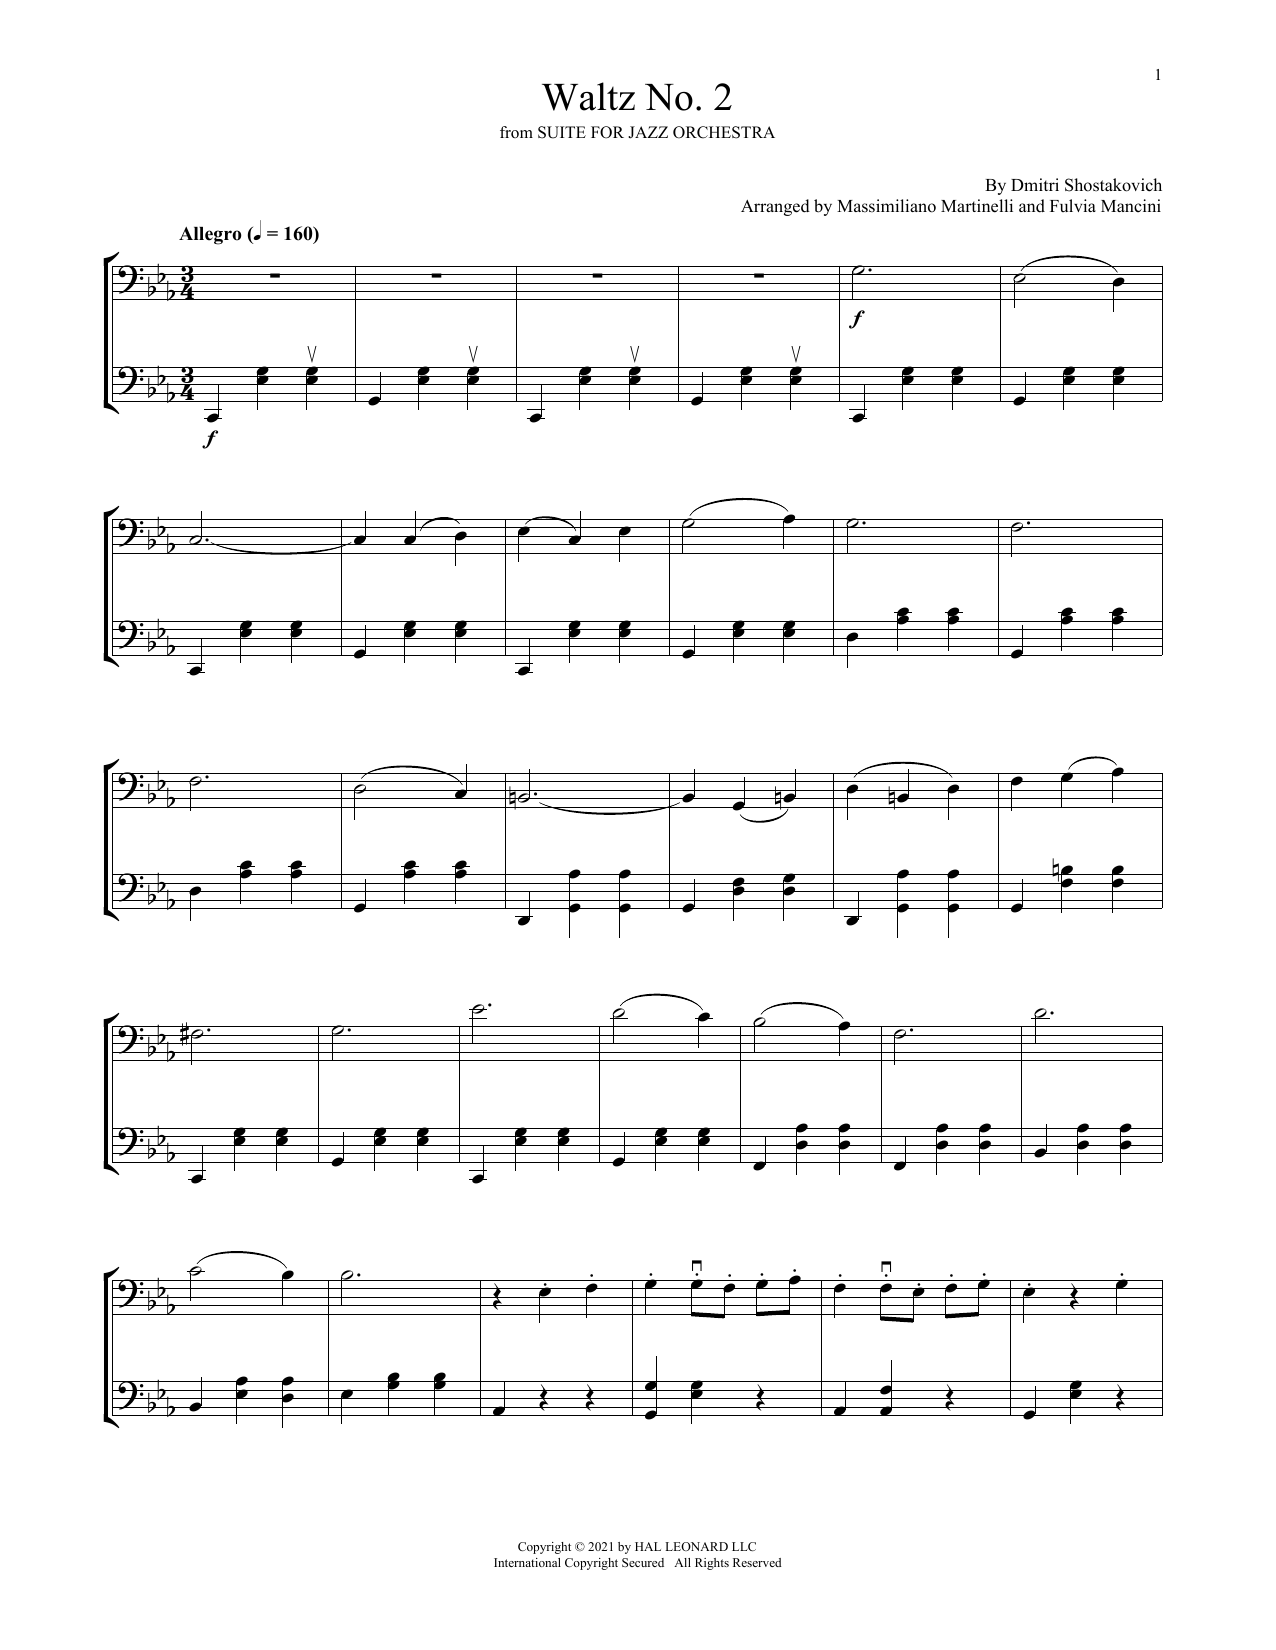 Download Mr & Mrs Cello Waltz No. 2 Sheet Music